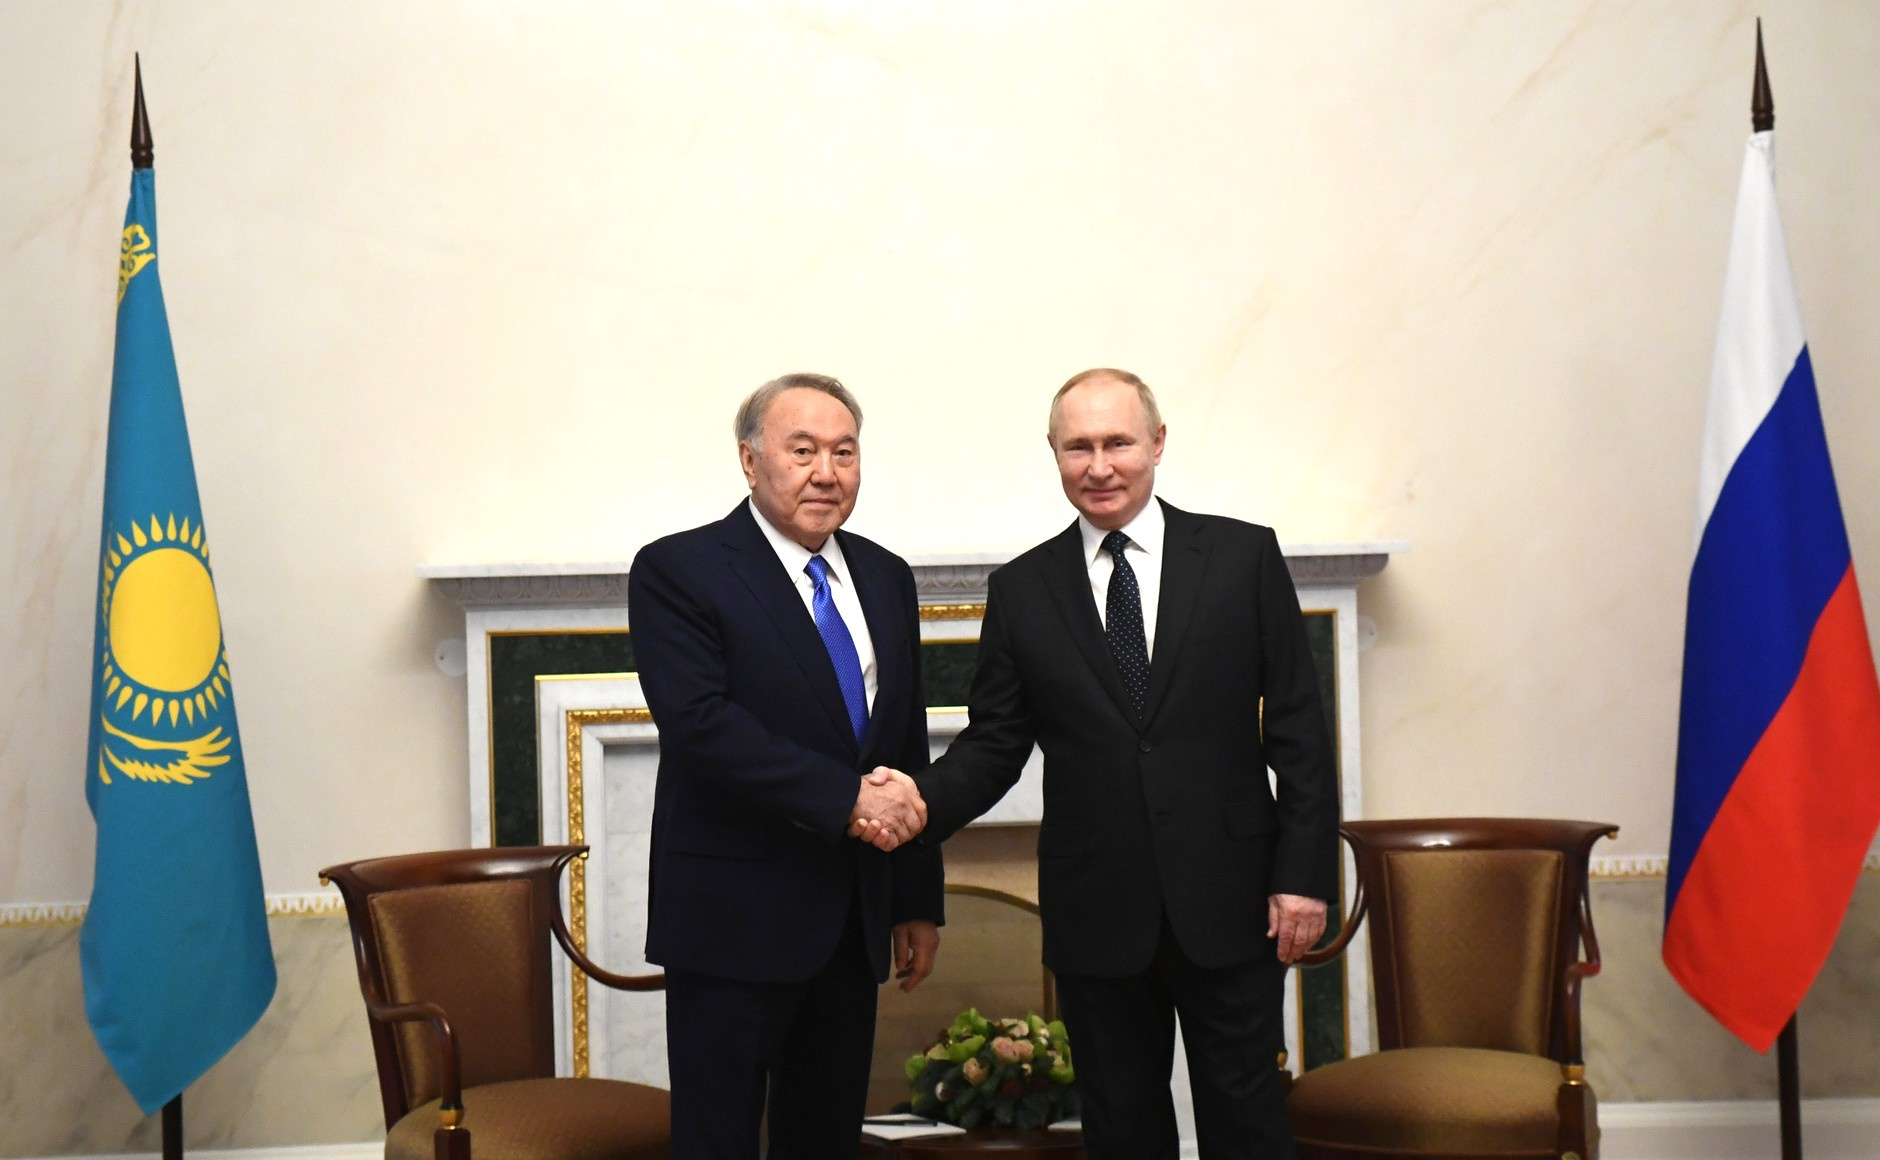 Встреча Владимира Путина с первым президентом Республики Казахстан — лидером нации Нурсултаном Назарбаевым, 28 декабря 2021 года, Санкт-Петербург.